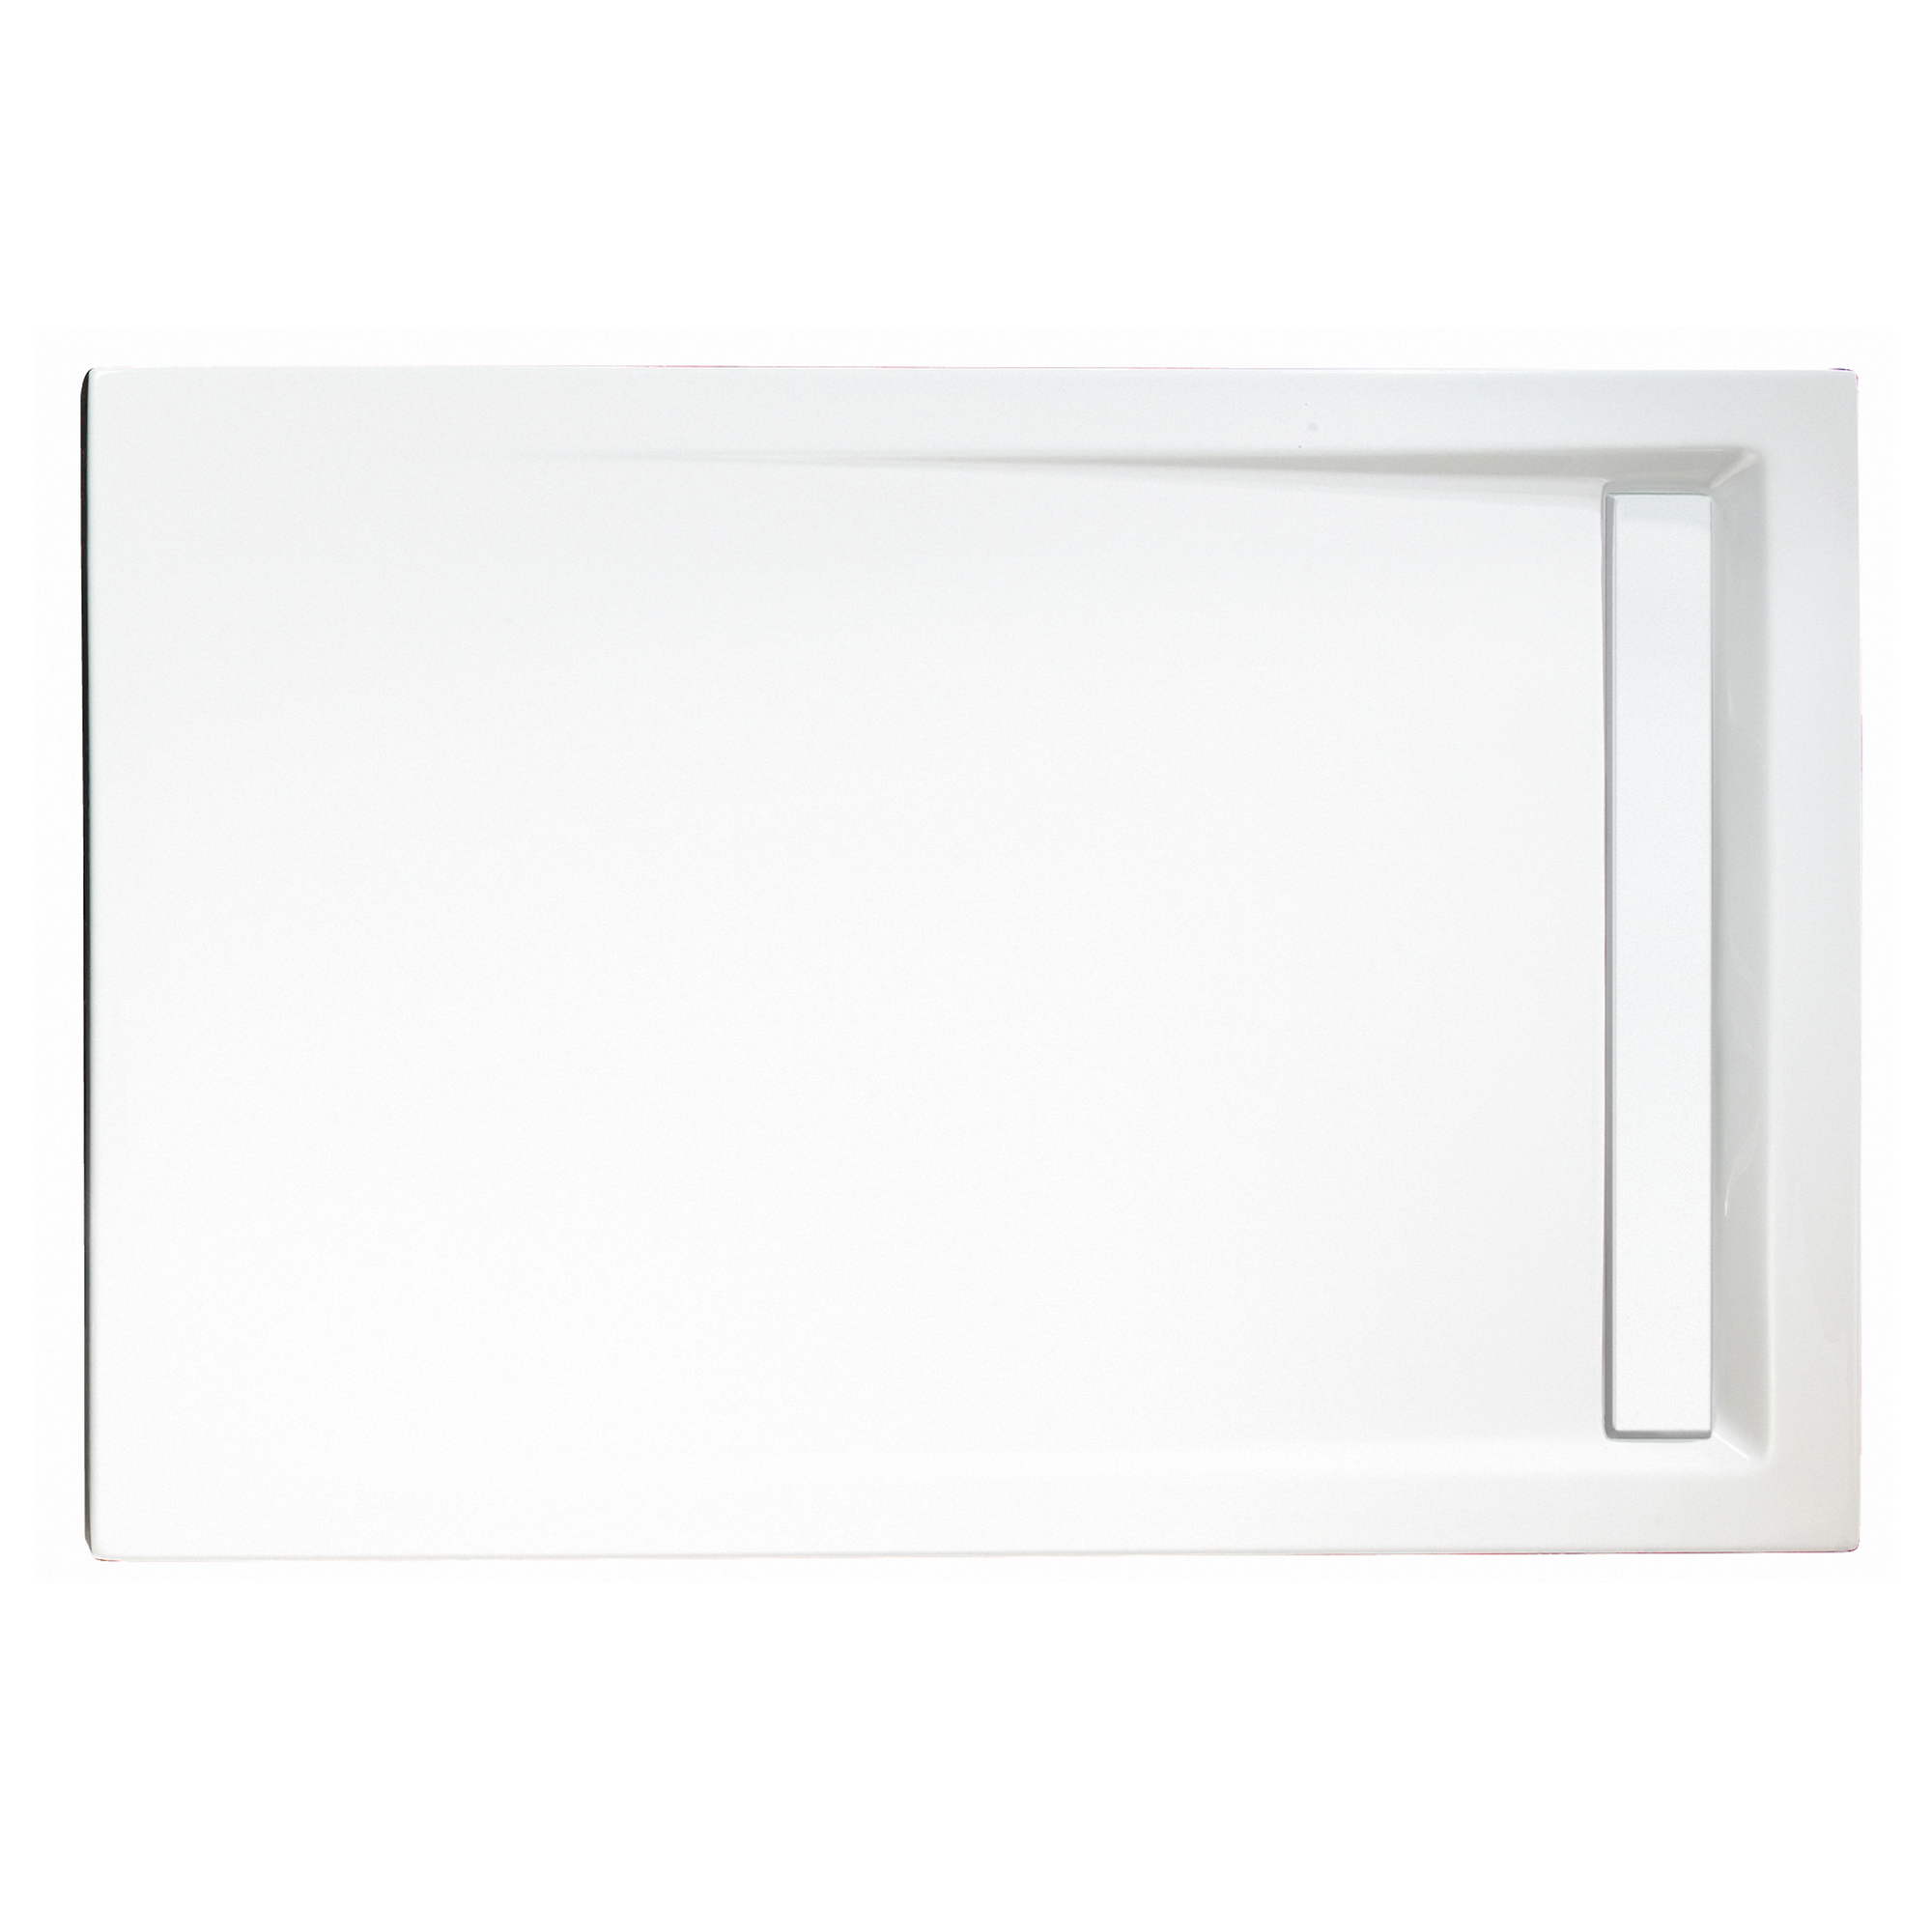 Duschwanne, Sanitäracryl, mit Rinne, weiß, rechteckig, 120 x 90 x 2,5 cm + product picture